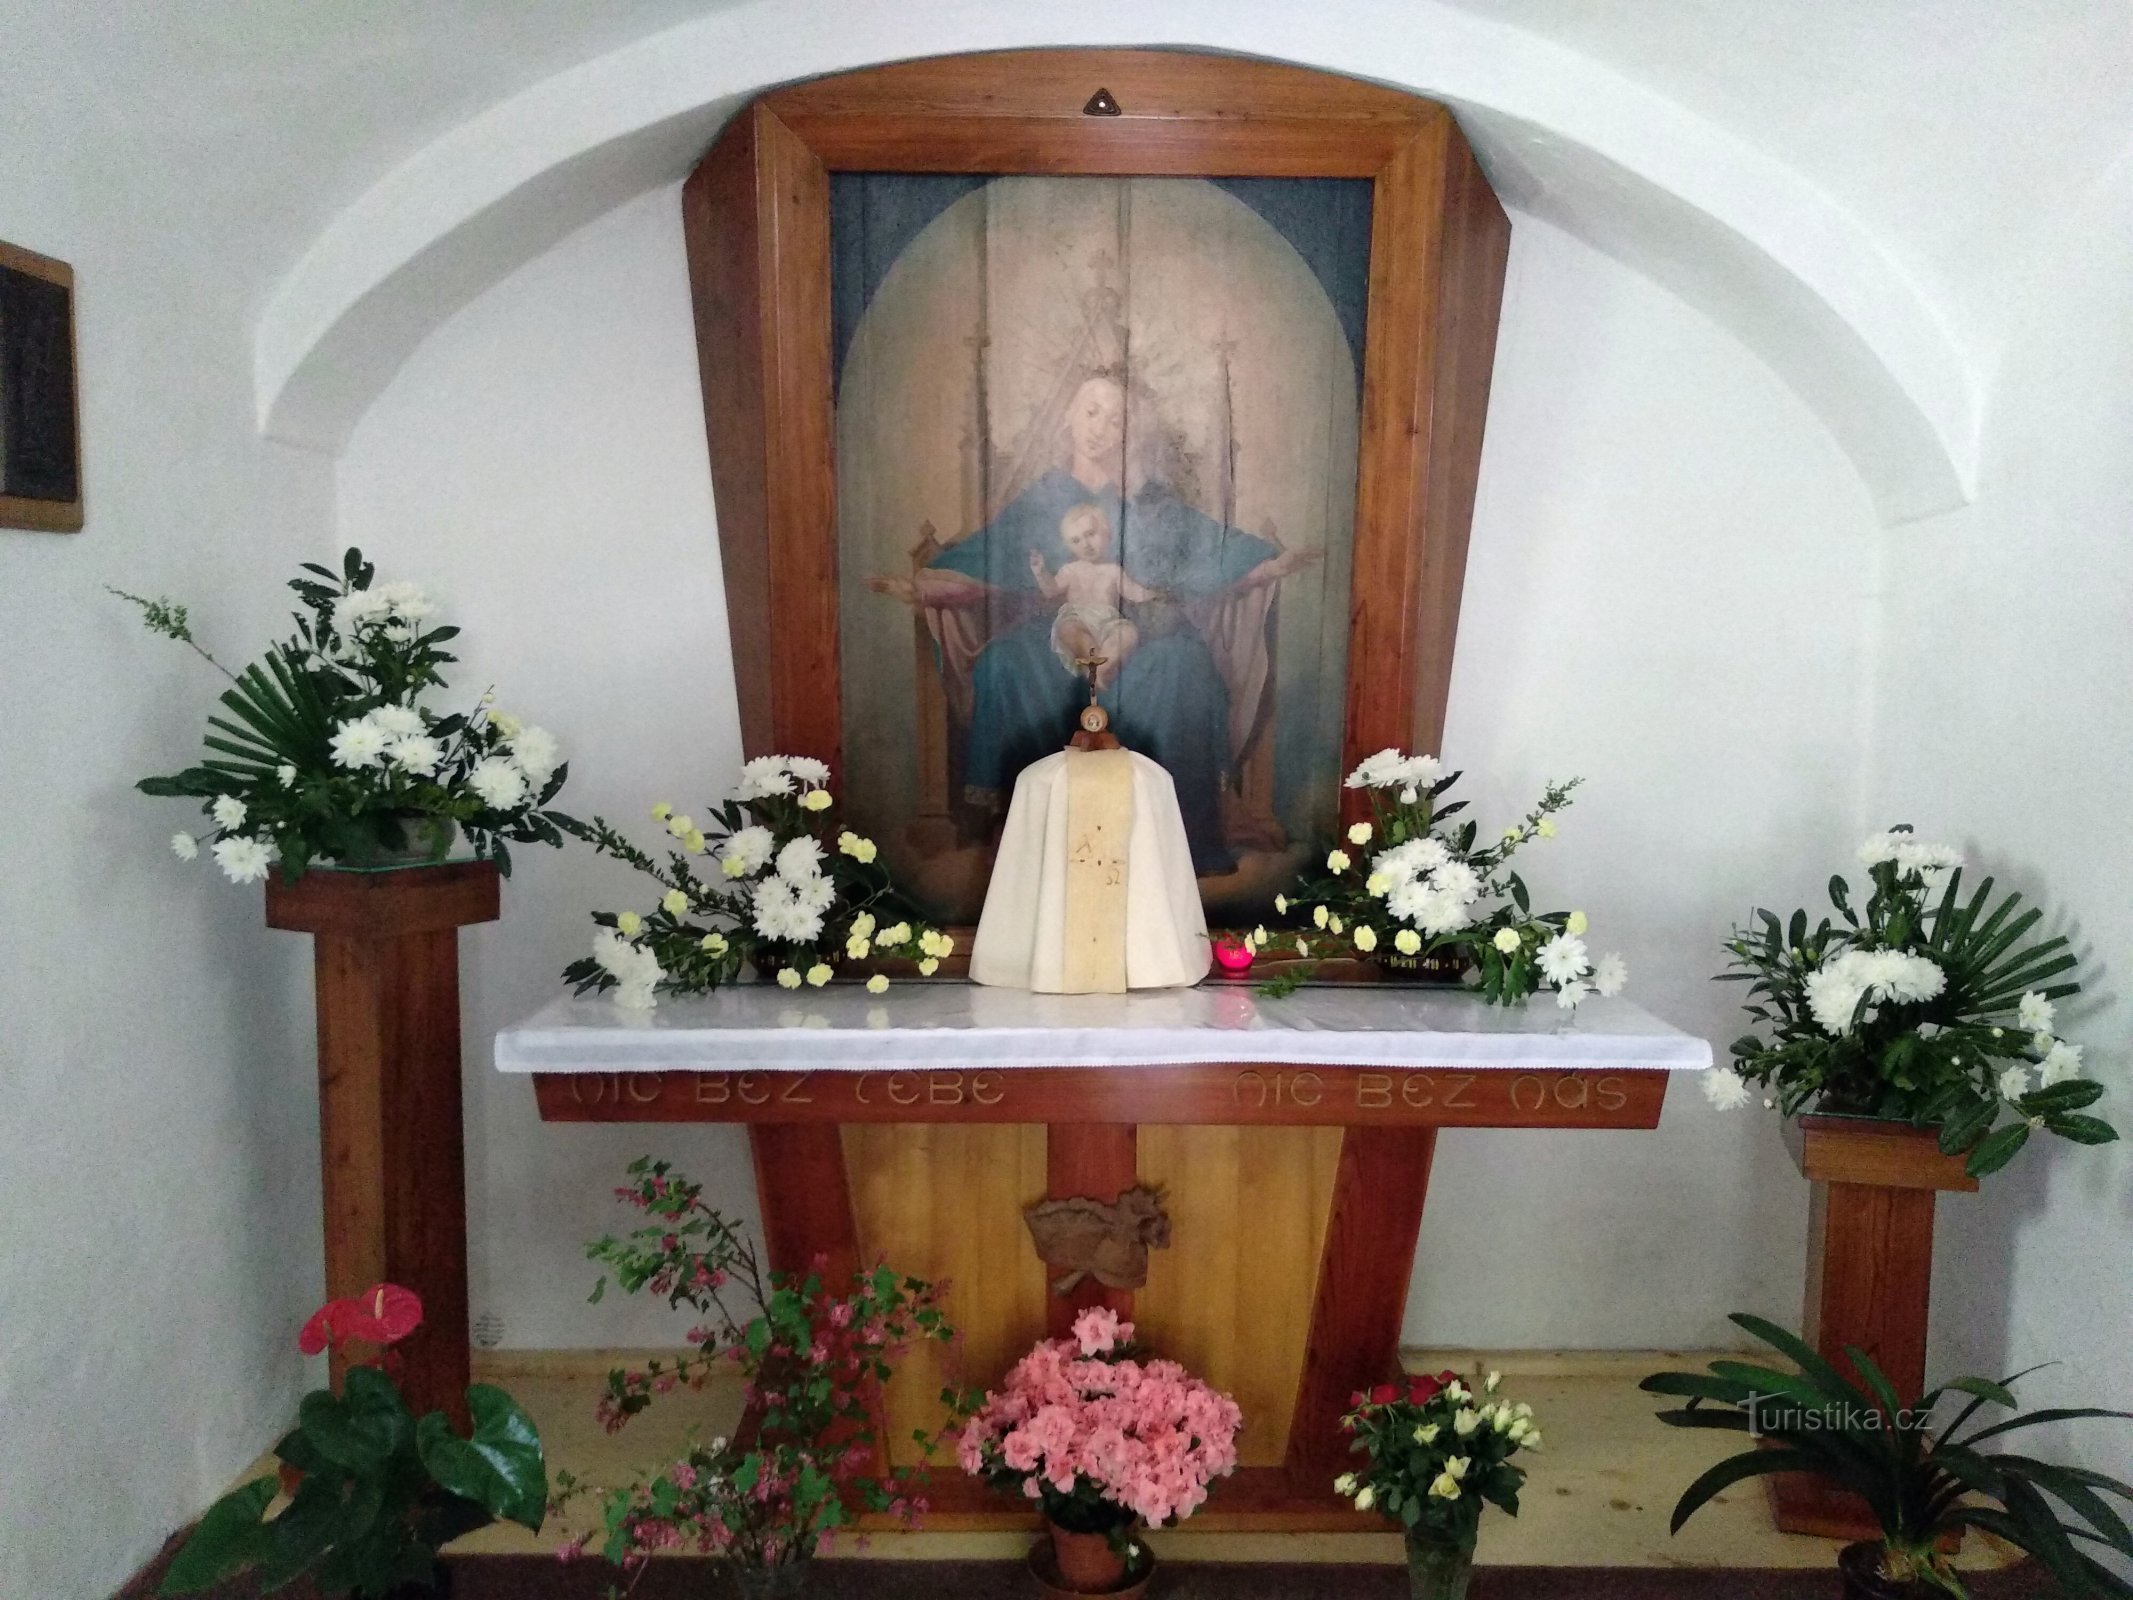 het interieur van de kapel van de Maagd Rokolská